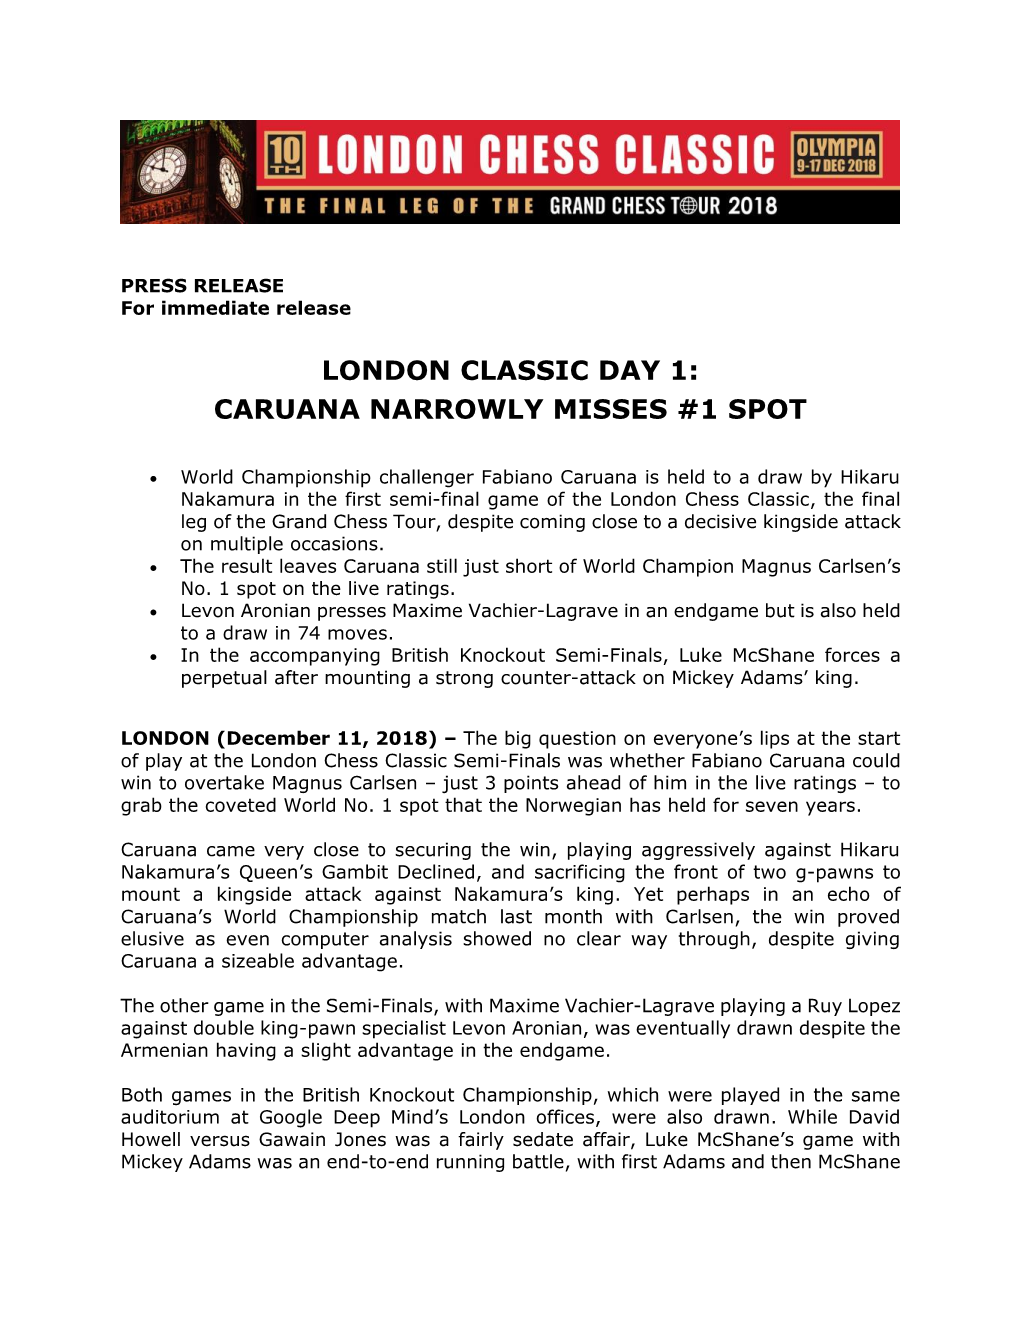 LCC-Press-Release-11